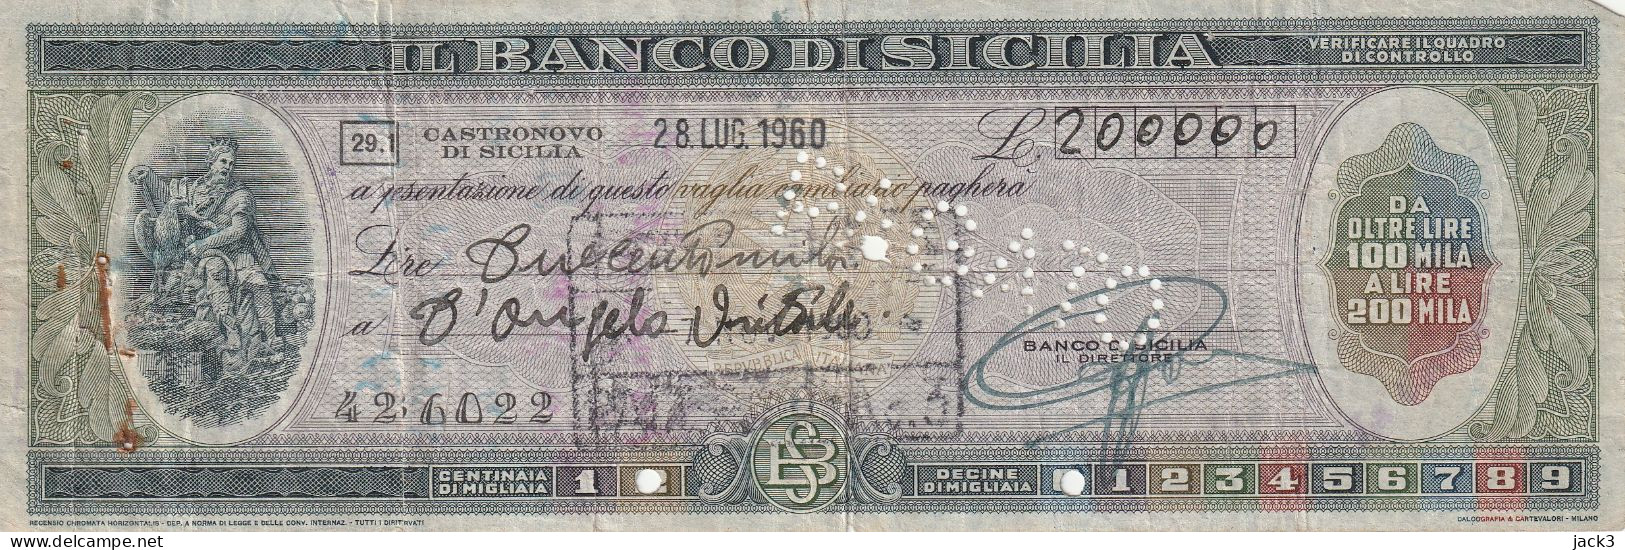 ASSEGNO - BANCO DI SICILIA - CASTRONOVO DI SICILIA 1960 - Assegni & Assegni Di Viaggio